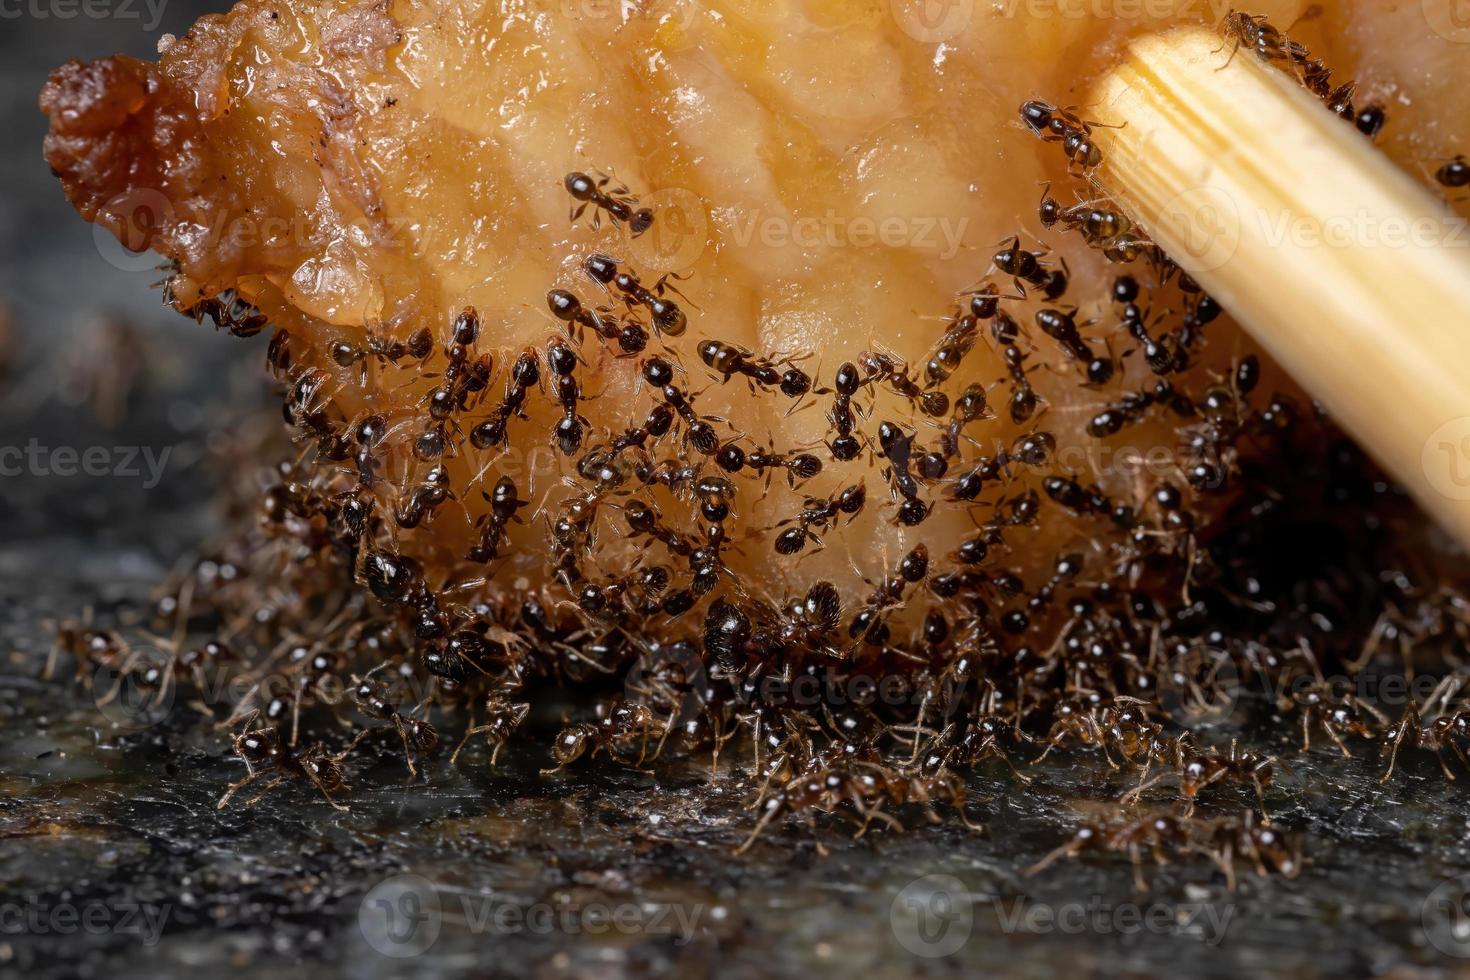 piccole formiche dalla testa grossa nel grasso animale foto